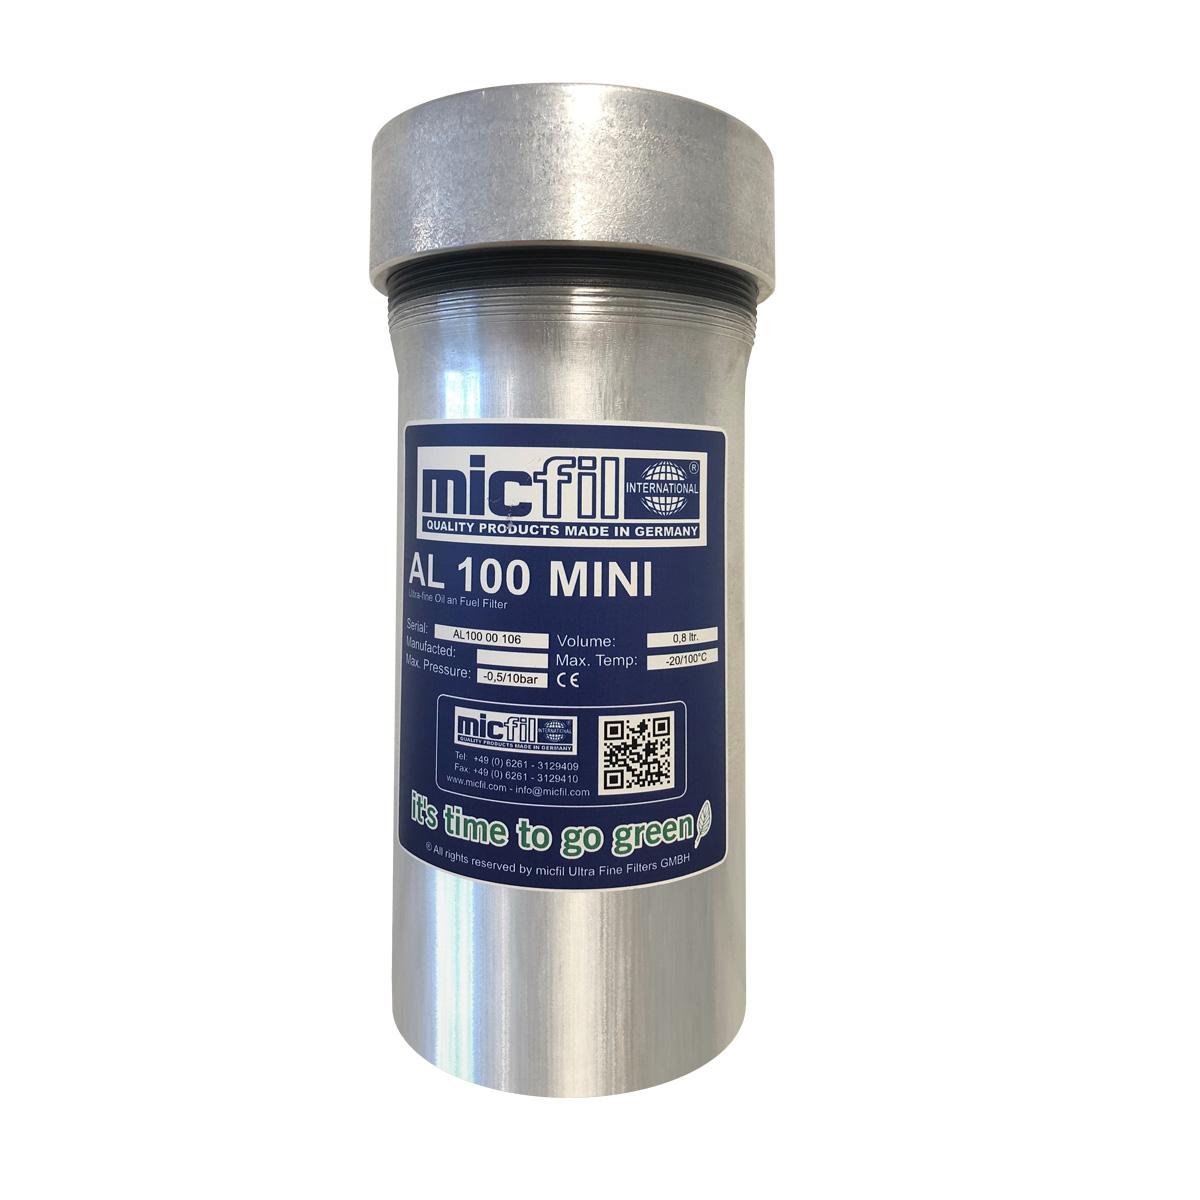 Micfil filter AL100 mini